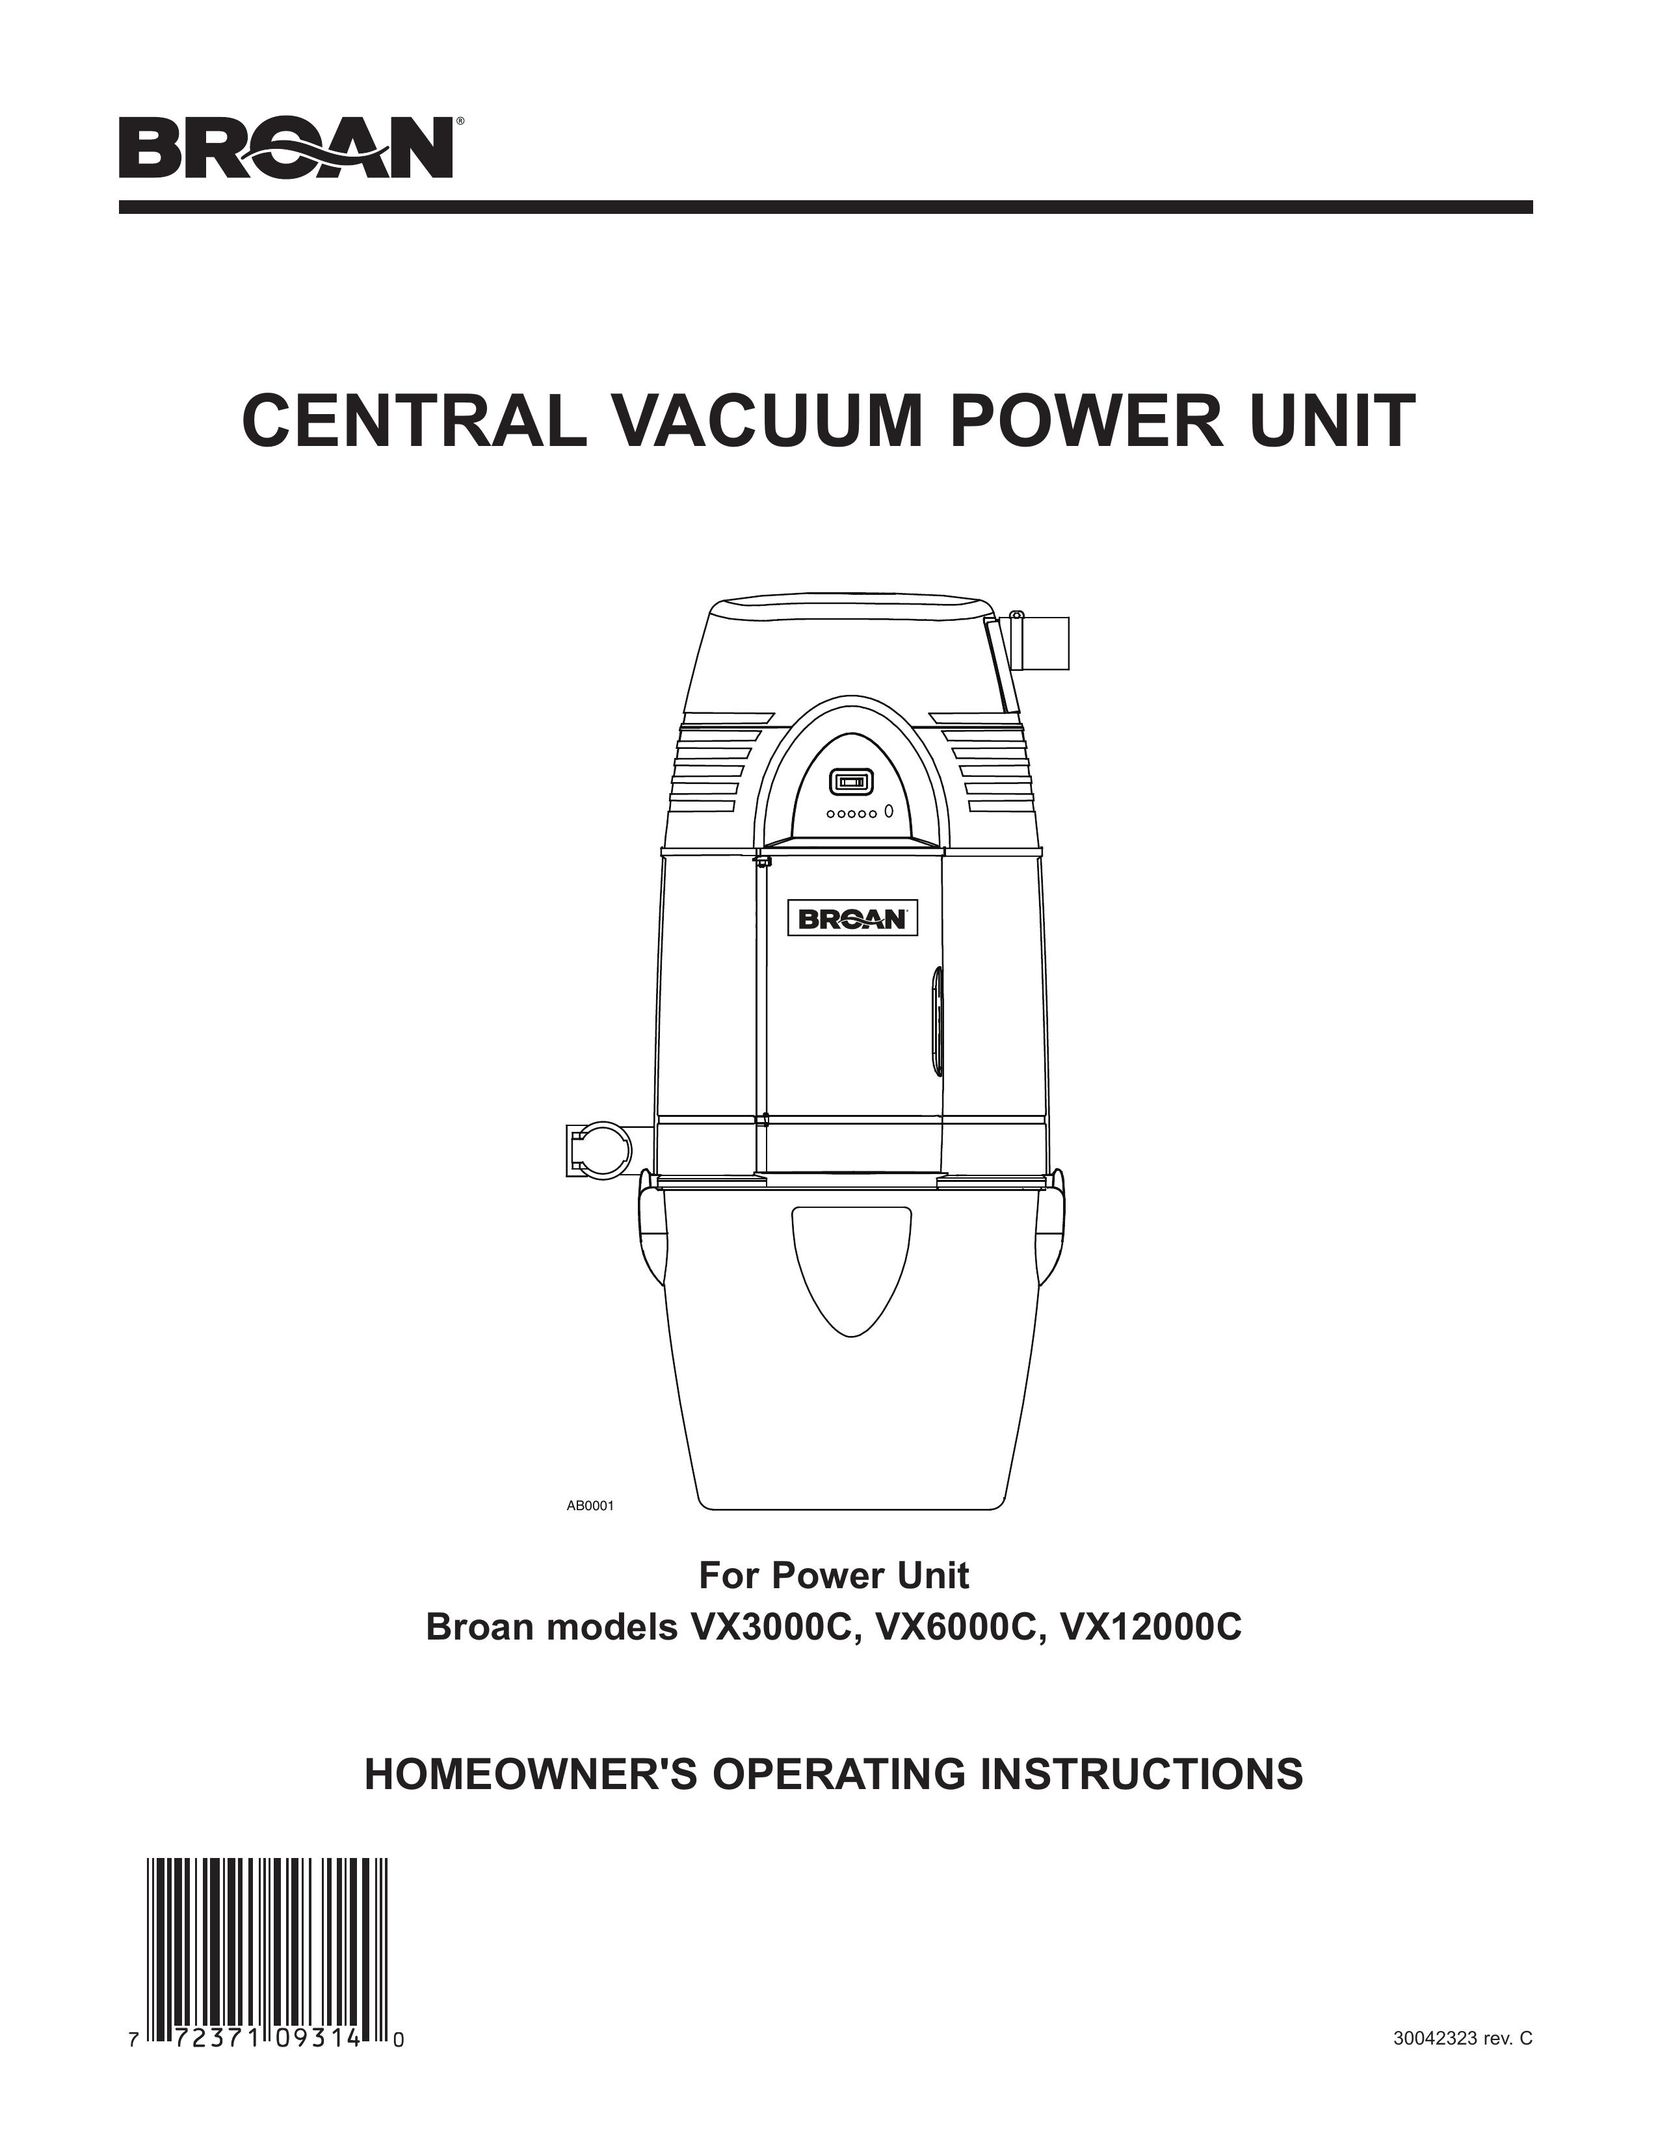 Broan VX12000C Vacuum Cleaner User Manual